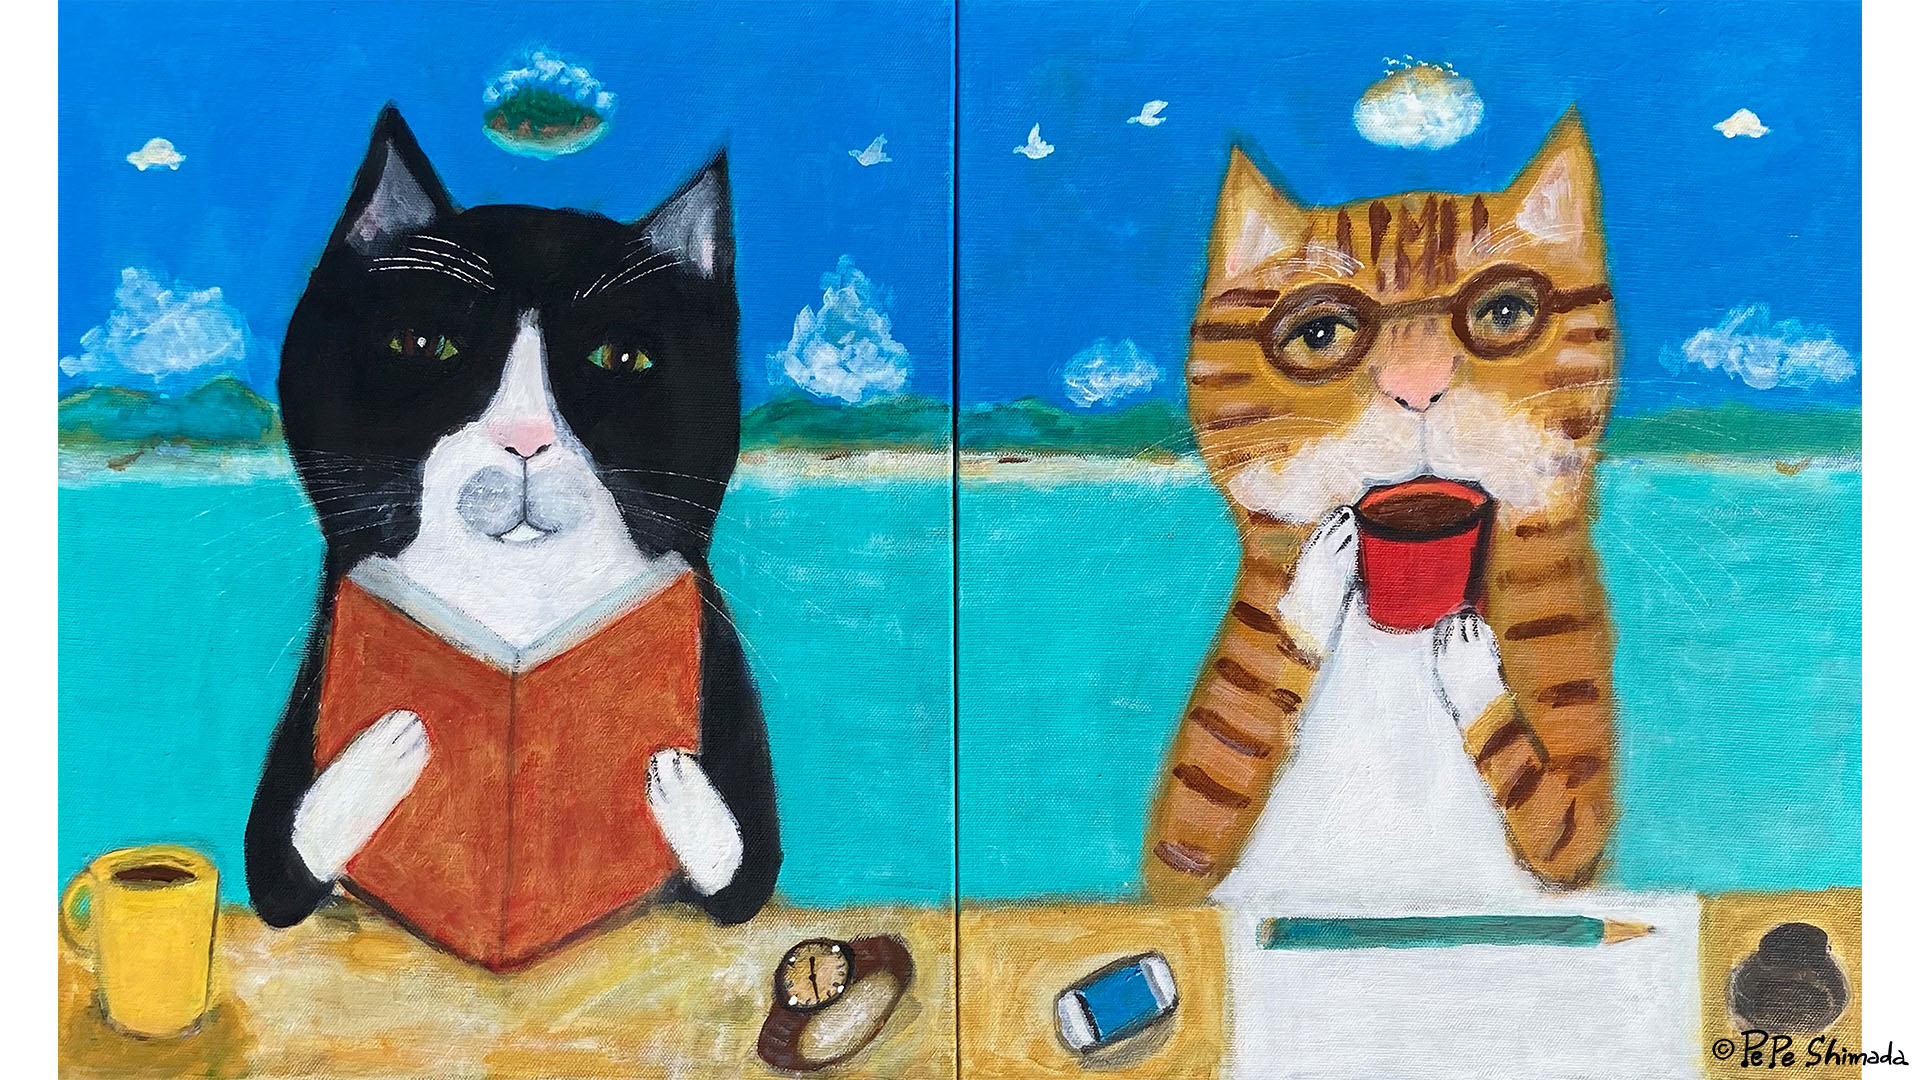 猫の日に向けて Pepe Shimadaさん描き下ろしpc スマートフォン用壁紙画像を無料プレゼント お知らせ トピックス ポプラ社